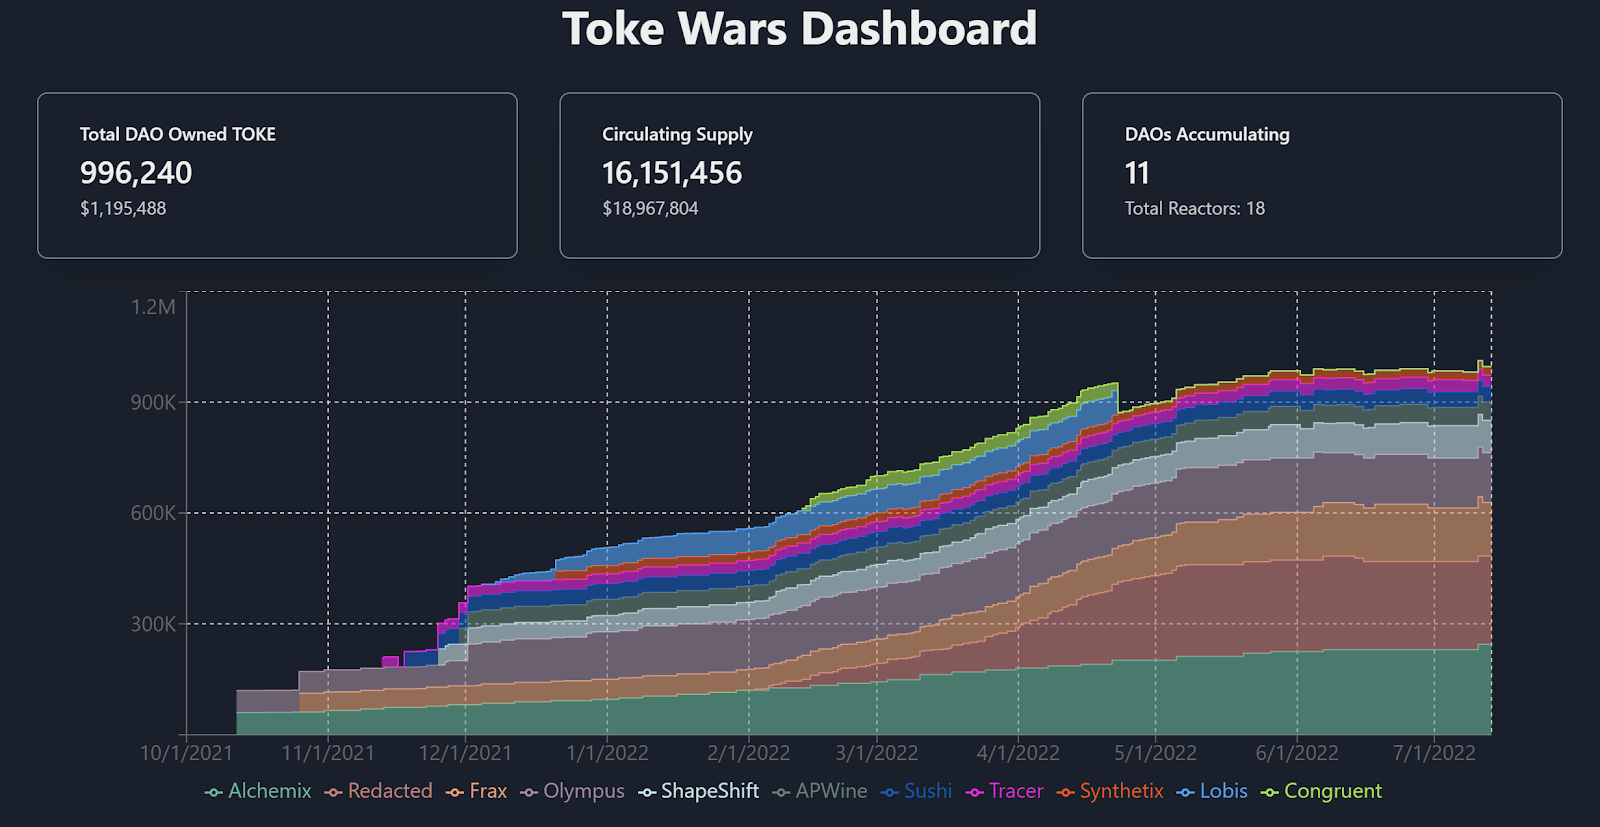 Toke Wars Dashboard - Source: https://wars.tokebase.org/